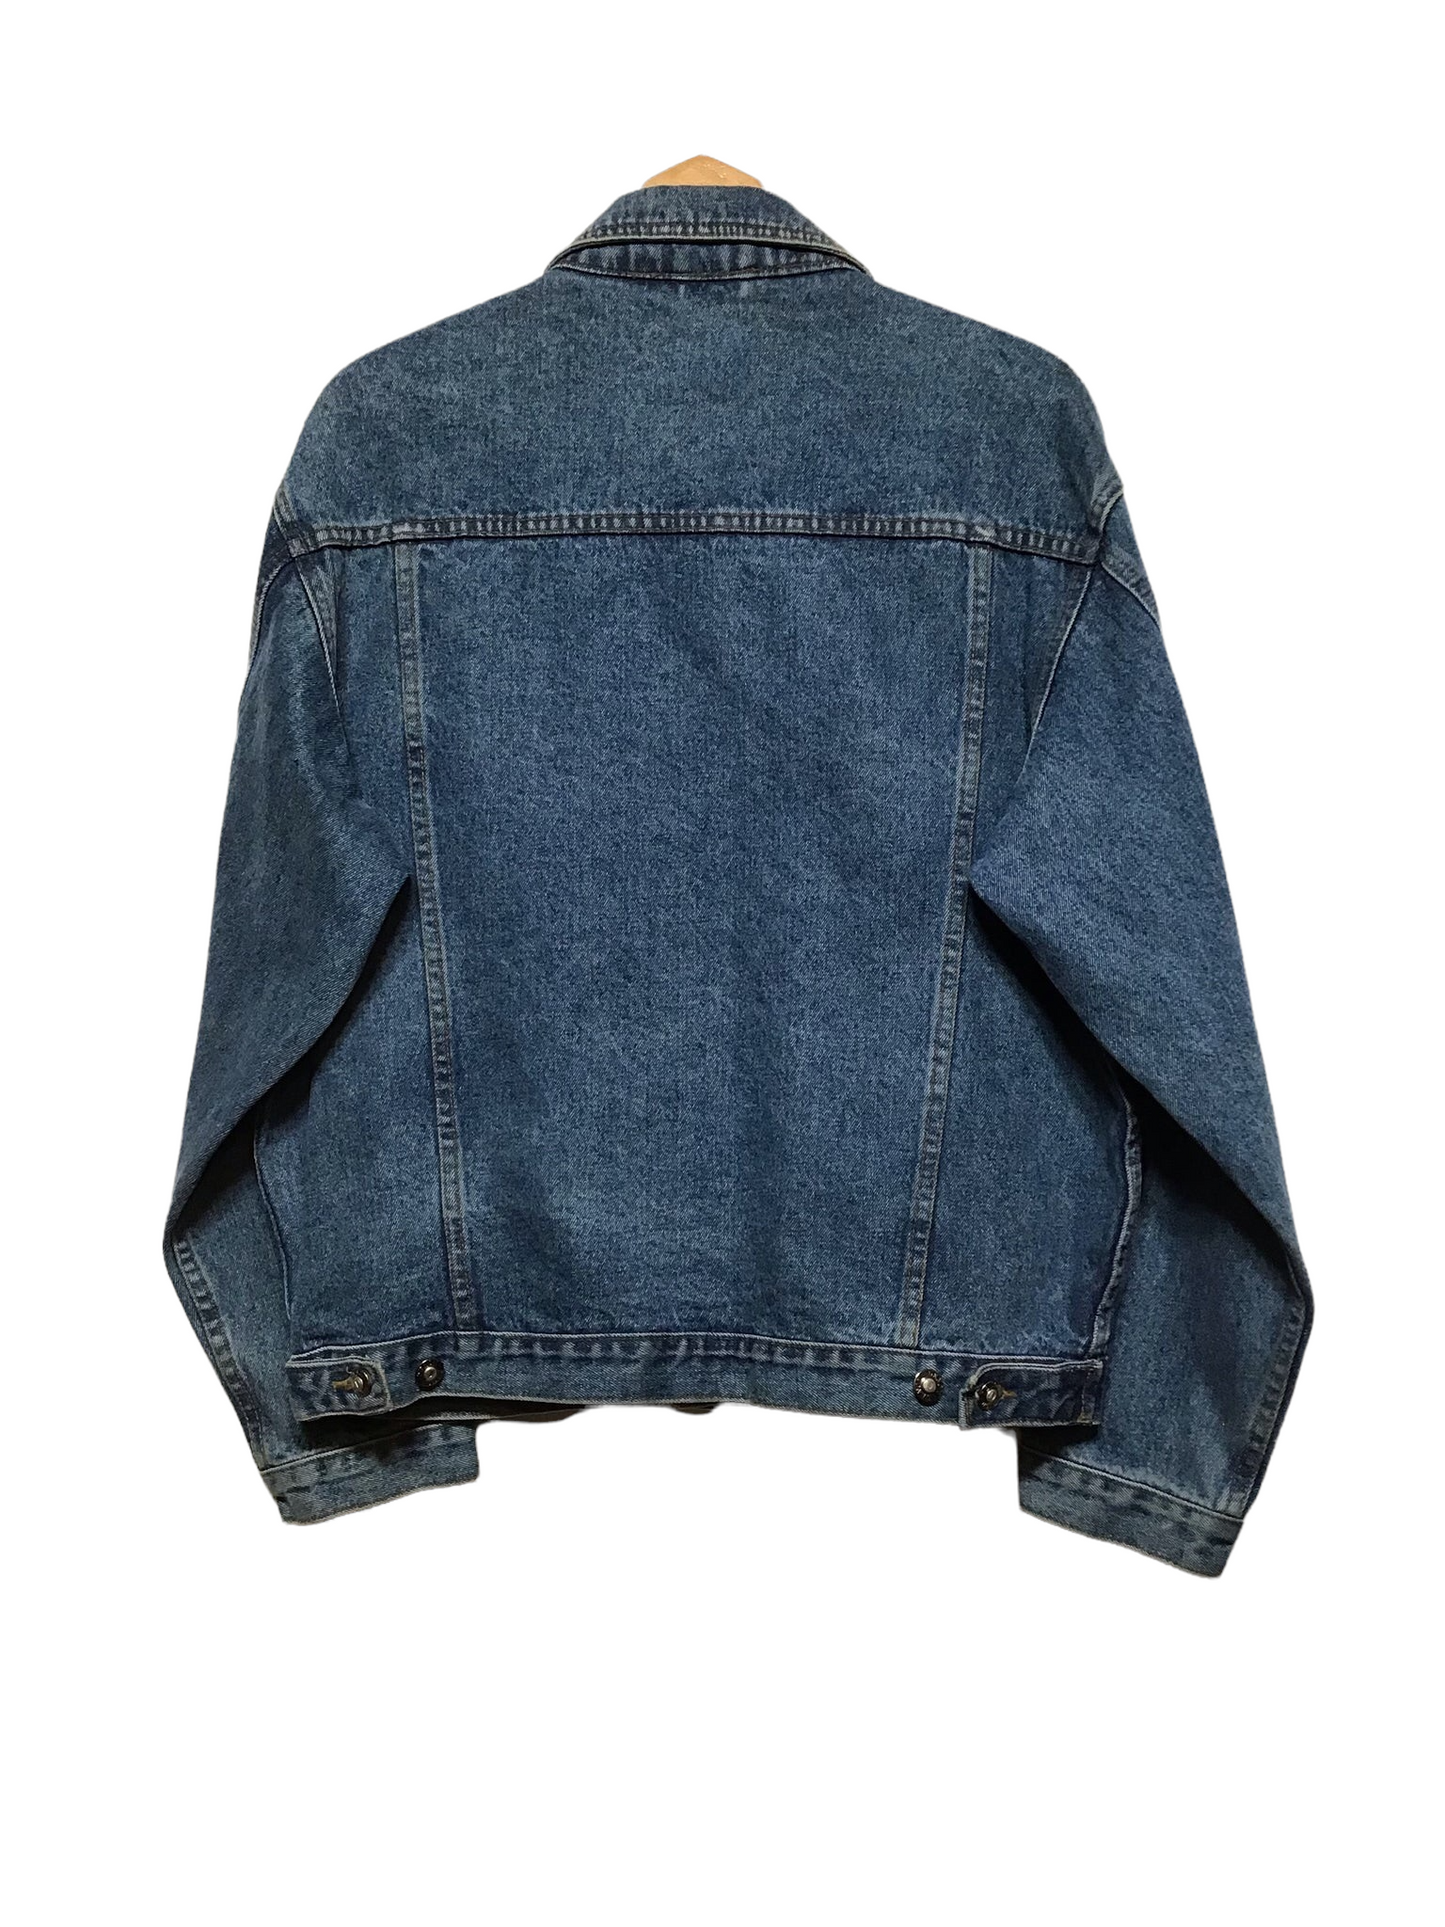 Denon Jeans Classic Denim Jacket (Size L)